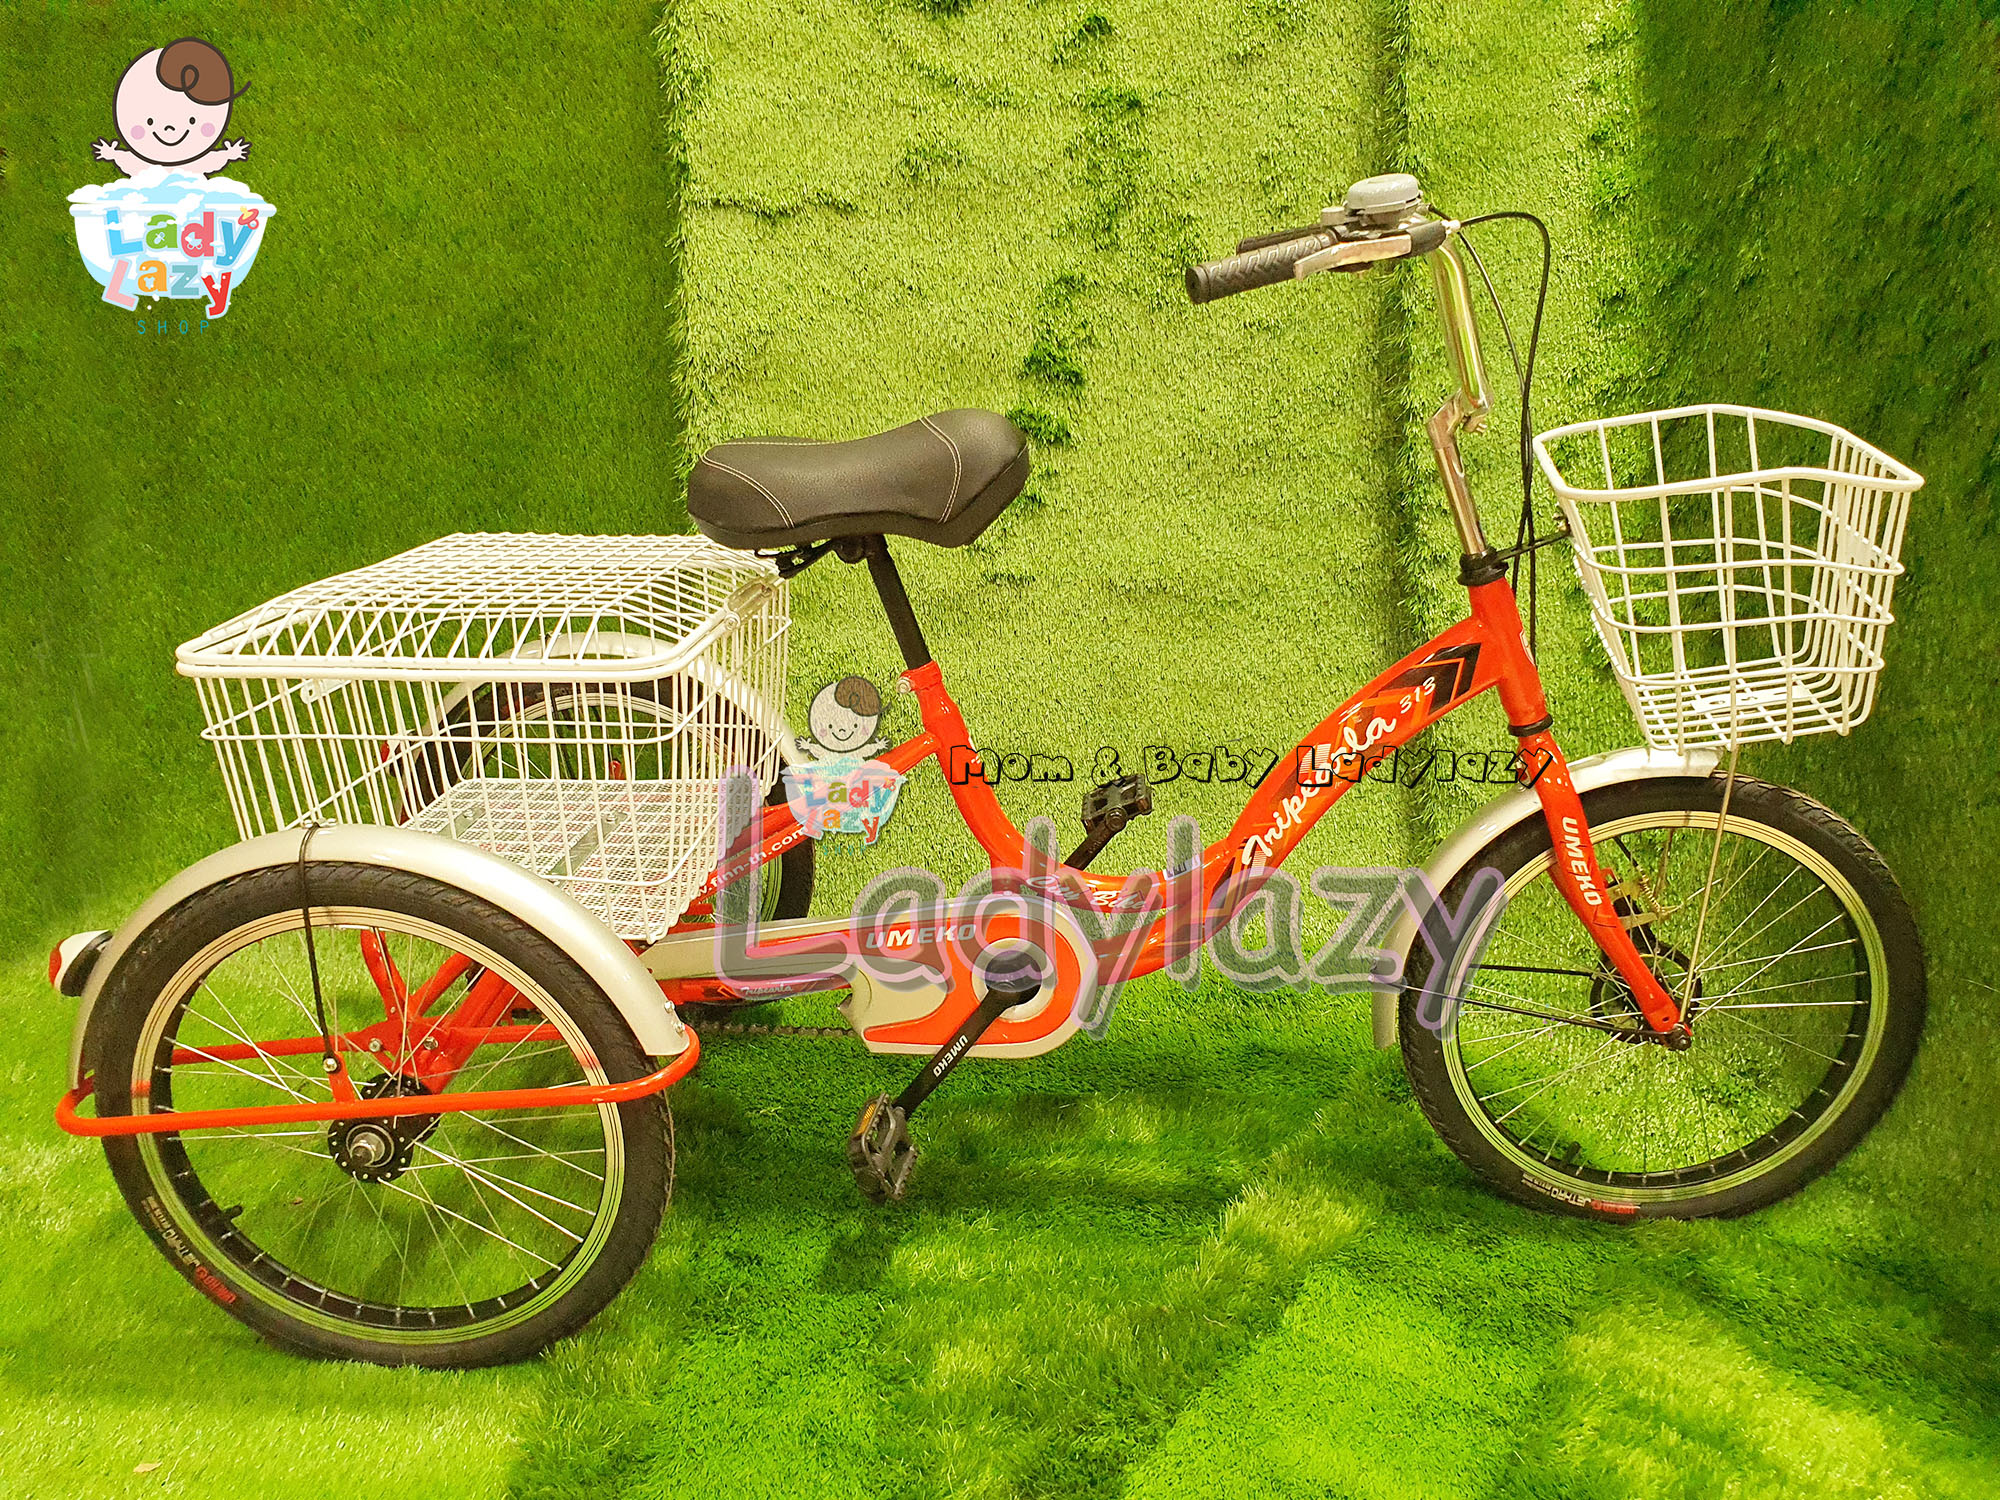 Ladylazyจักรยานสามล้อผู้ใหญ่ รุ่น Trinnia383 ขนาด 20 นิ้ว ตระกร้าใหญ่ สีแดง